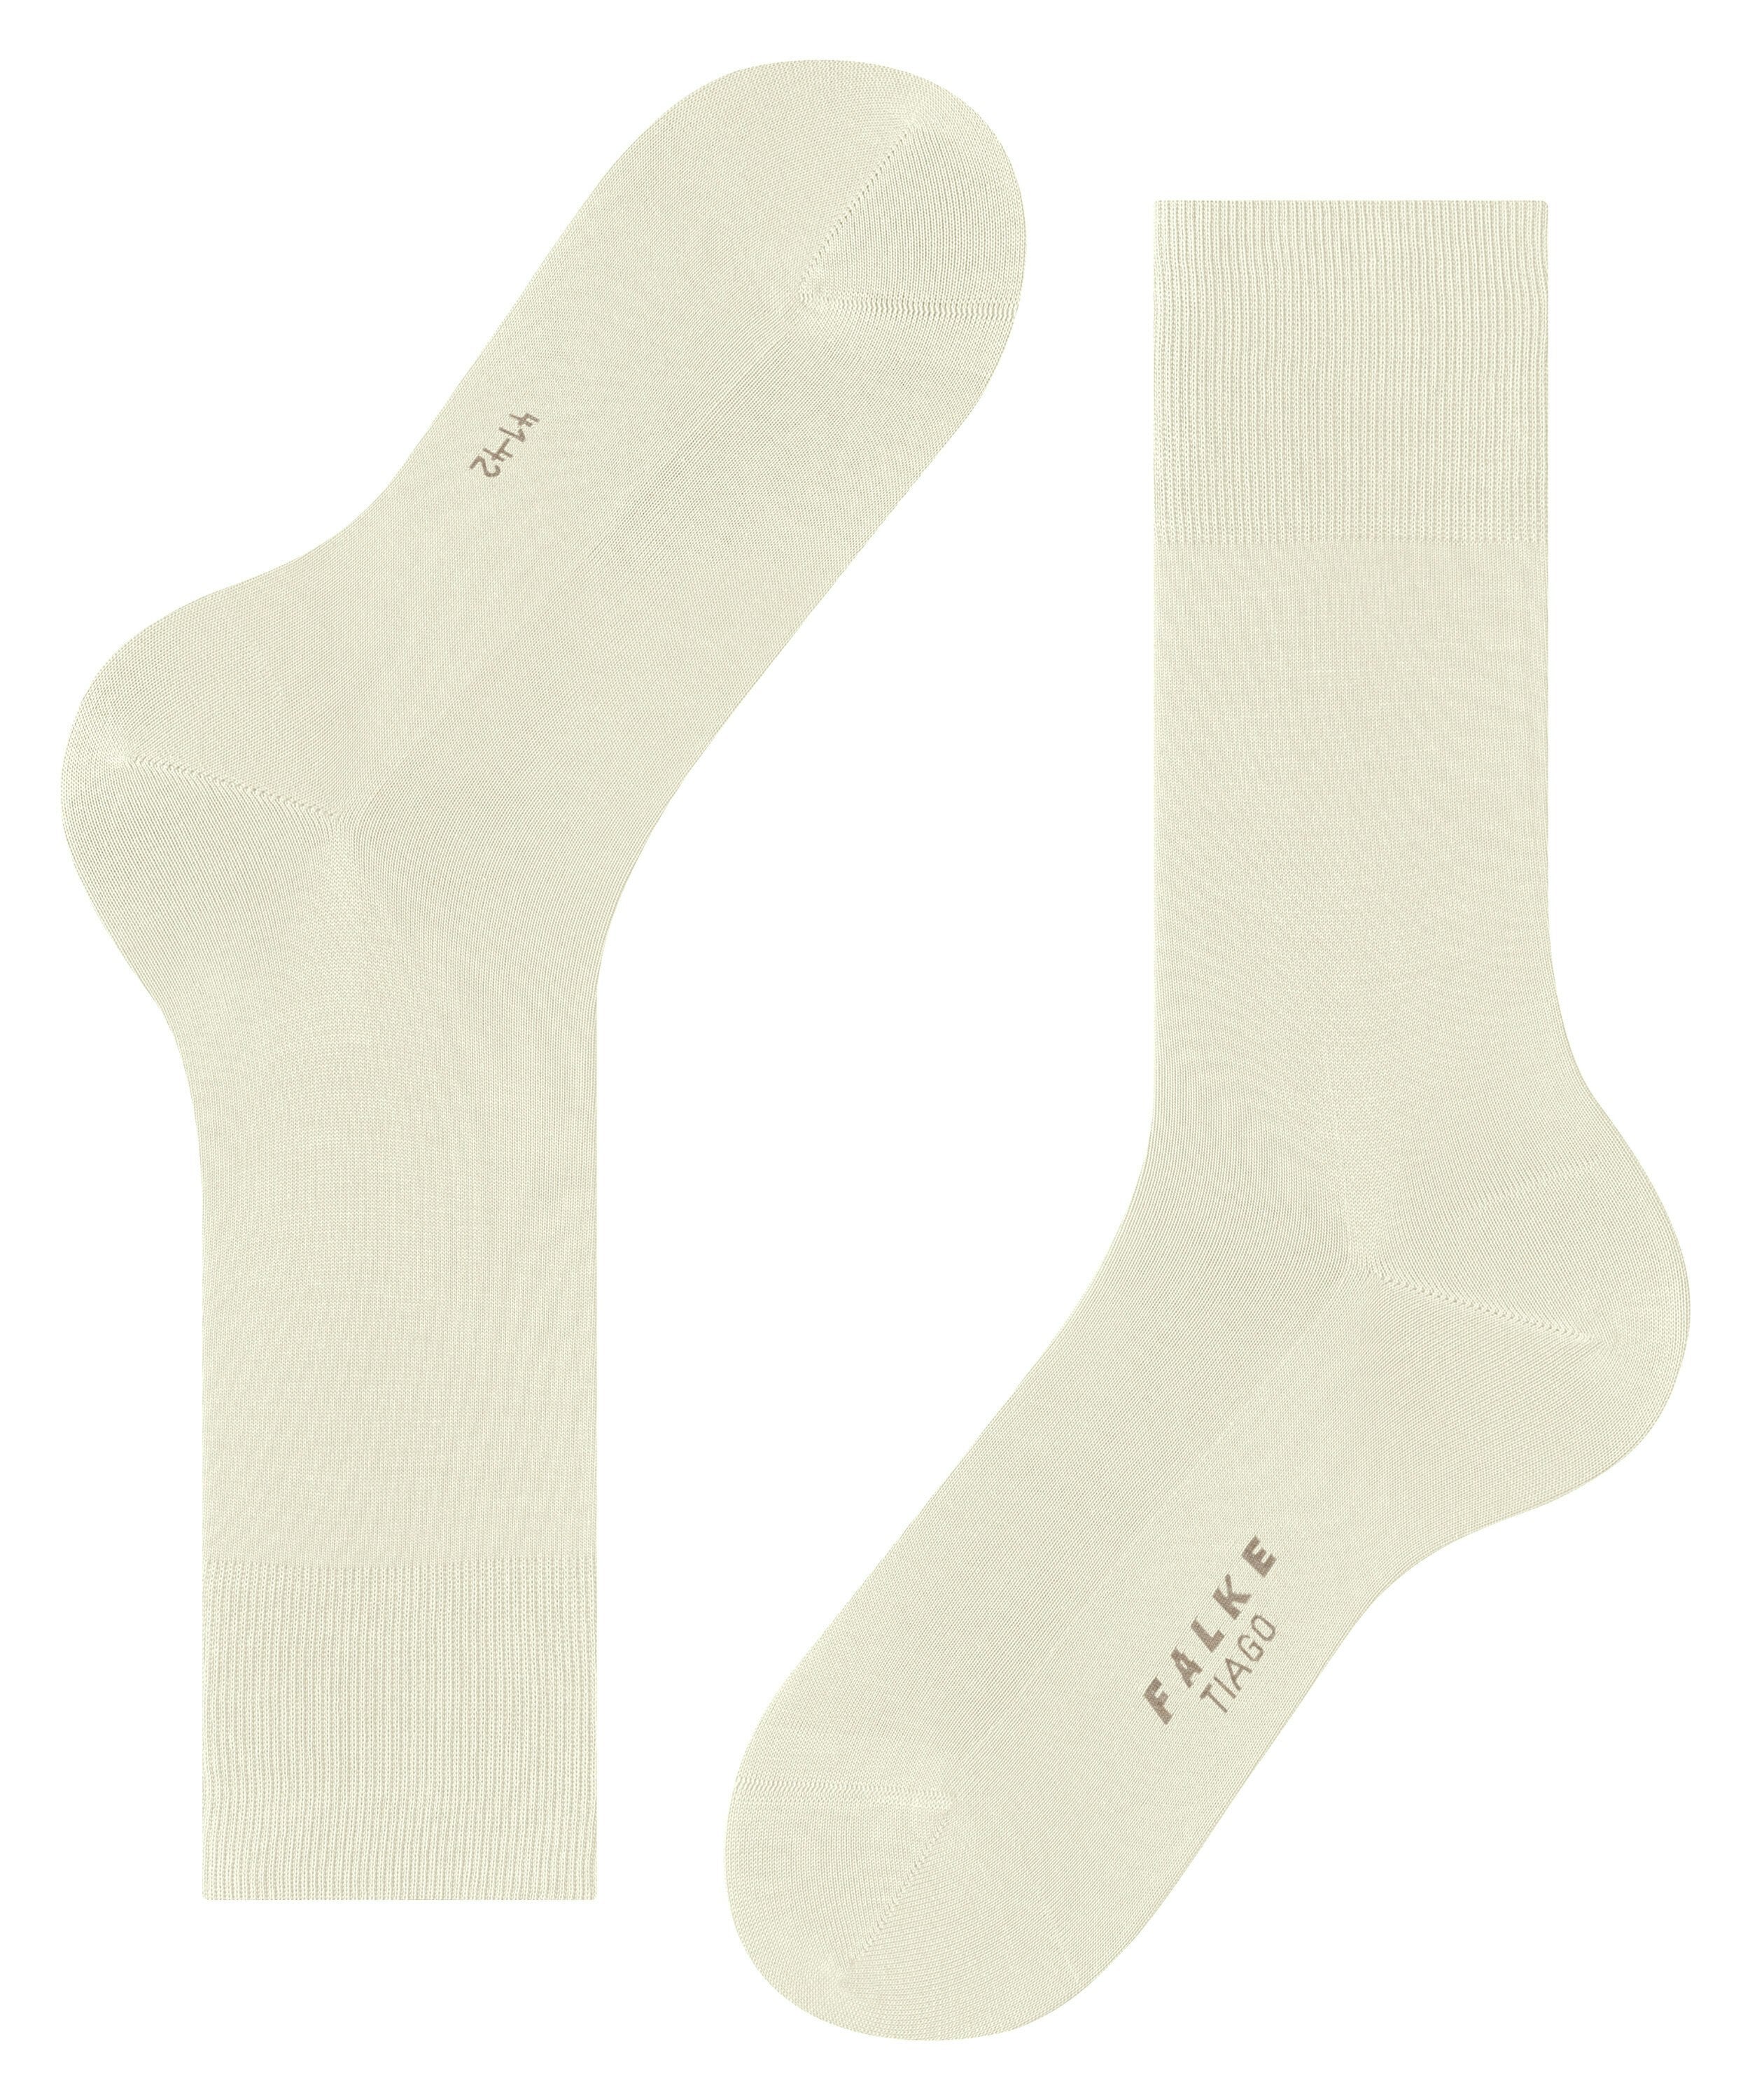 FALKE Tiago Socks in Bone White 14792